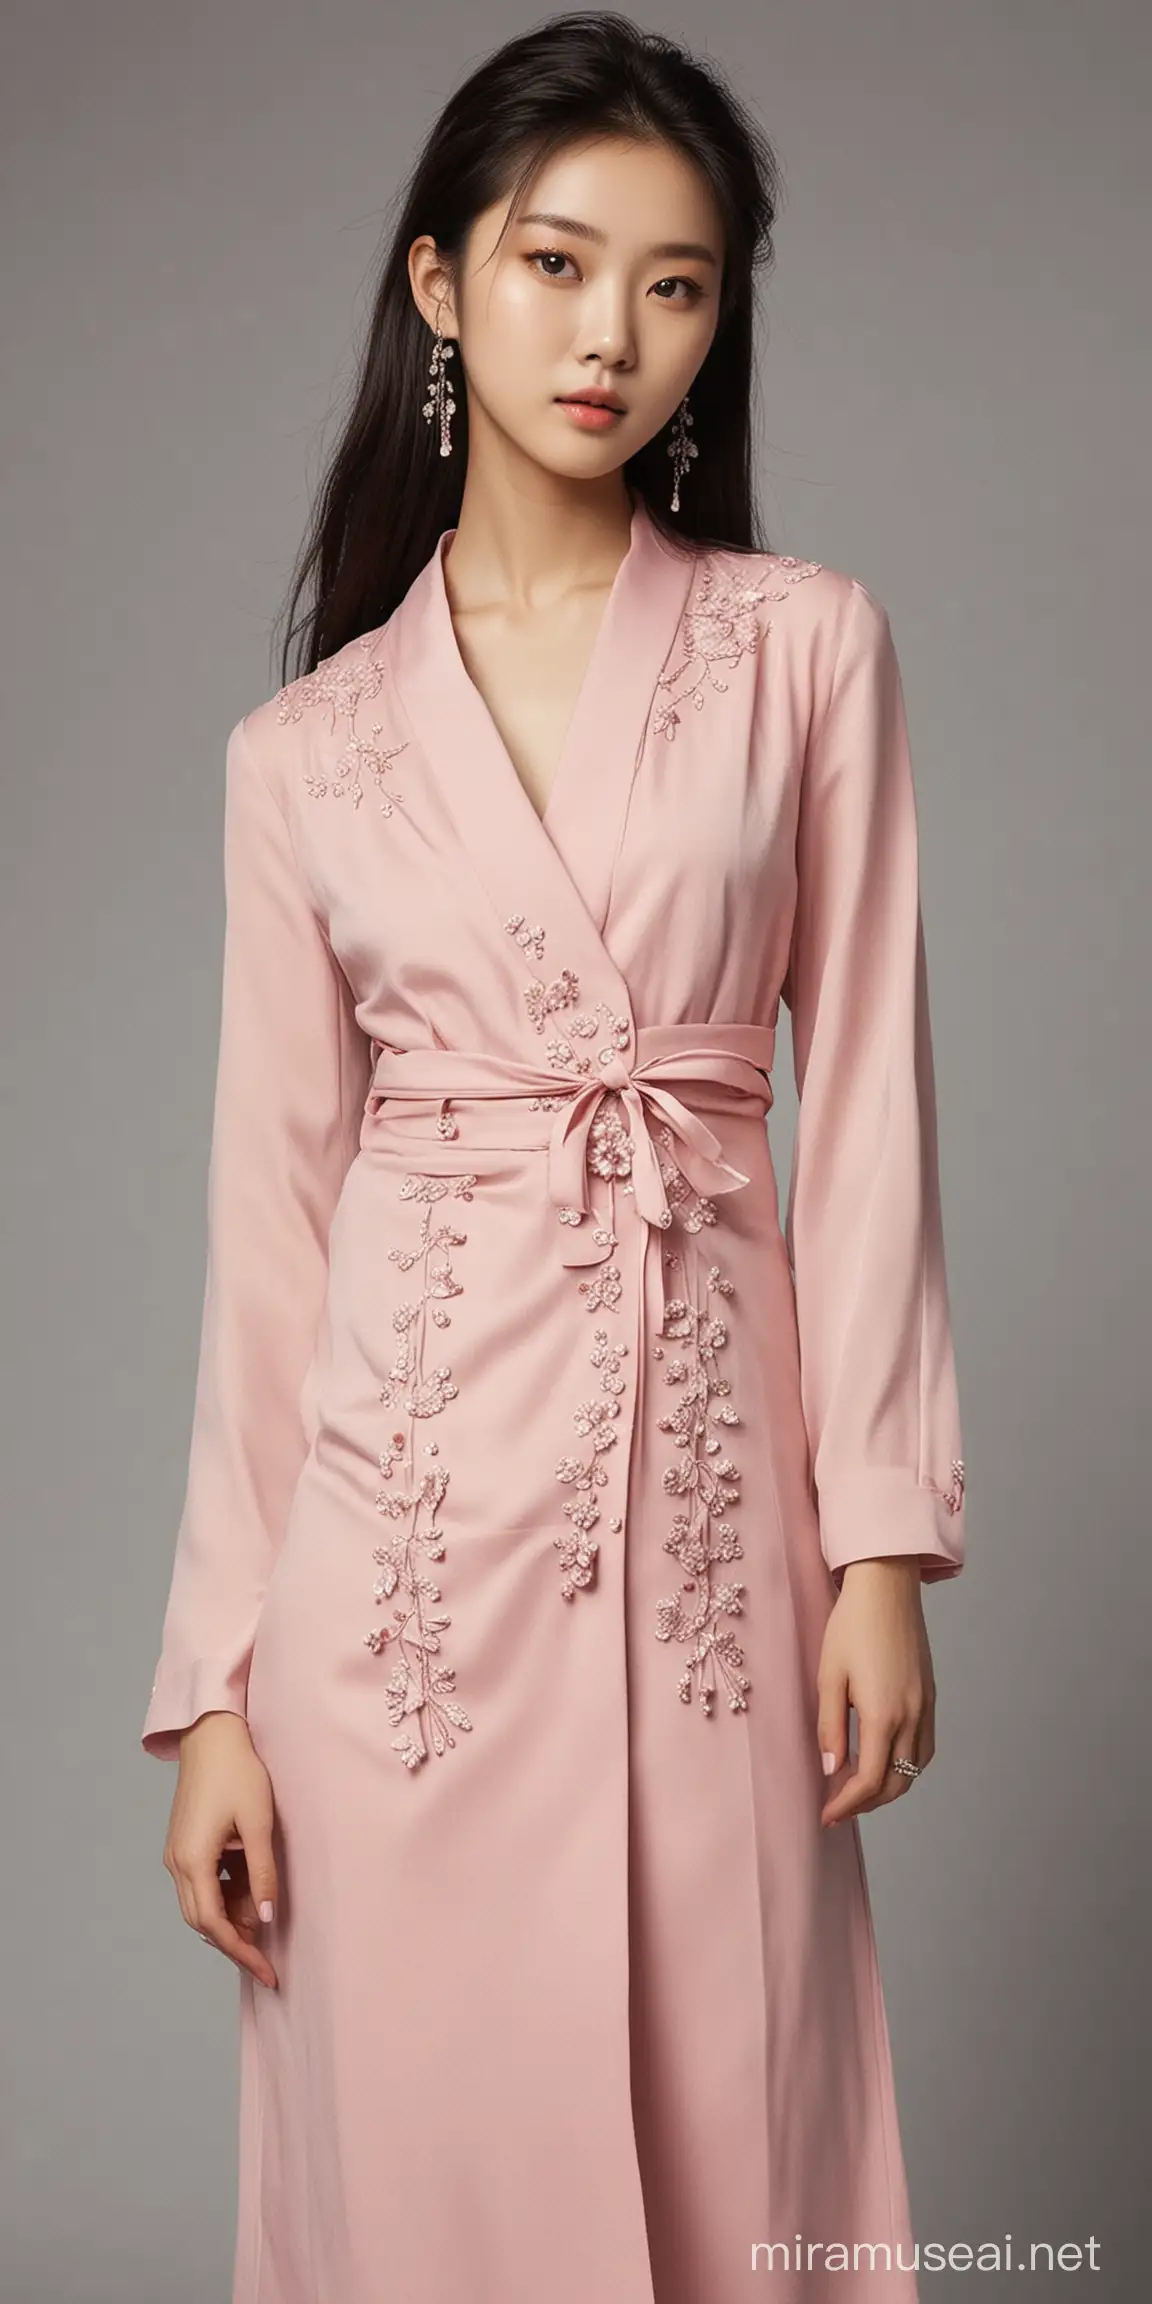 如果你是服装设计师你应该怎么搭配穿着，模特是22岁中国美女。